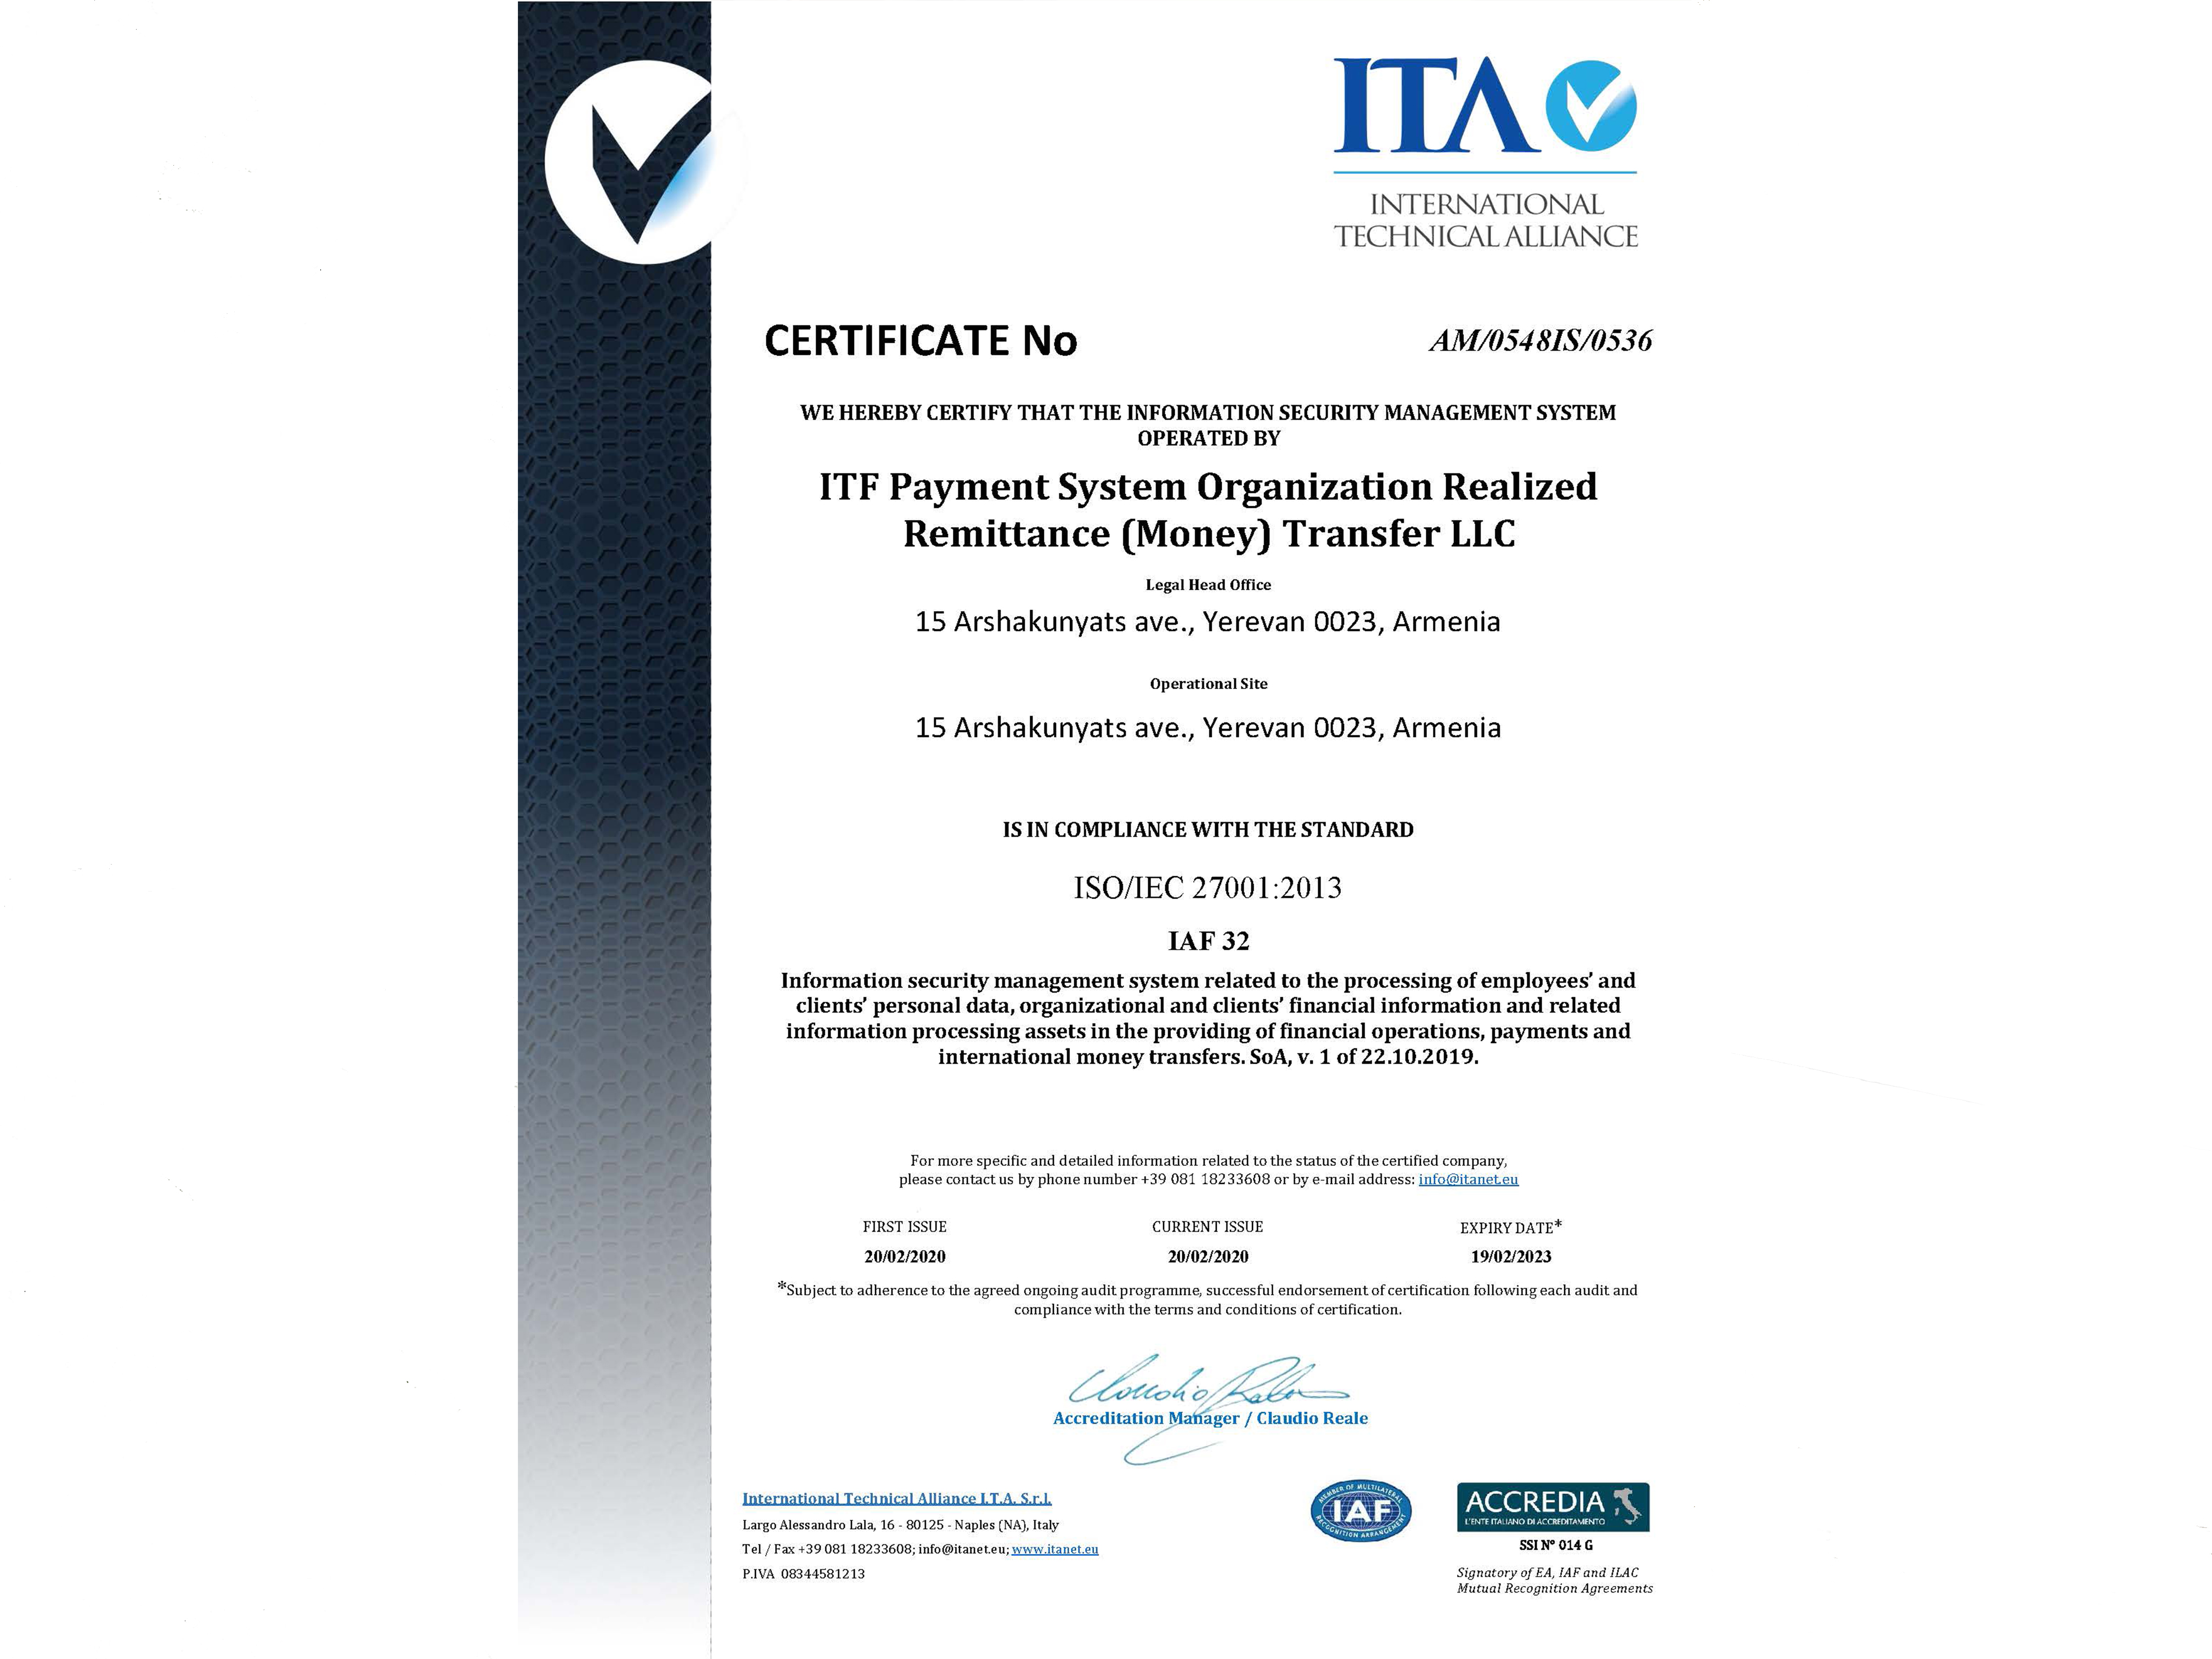 «ԱՅԹԻԷՖ» ՍՊԸ - ն ստացել է տեղեկատվական անվտանգության կառավարման համակարգի ISO 27001:2013 միջազգային սերտիֆիկատ